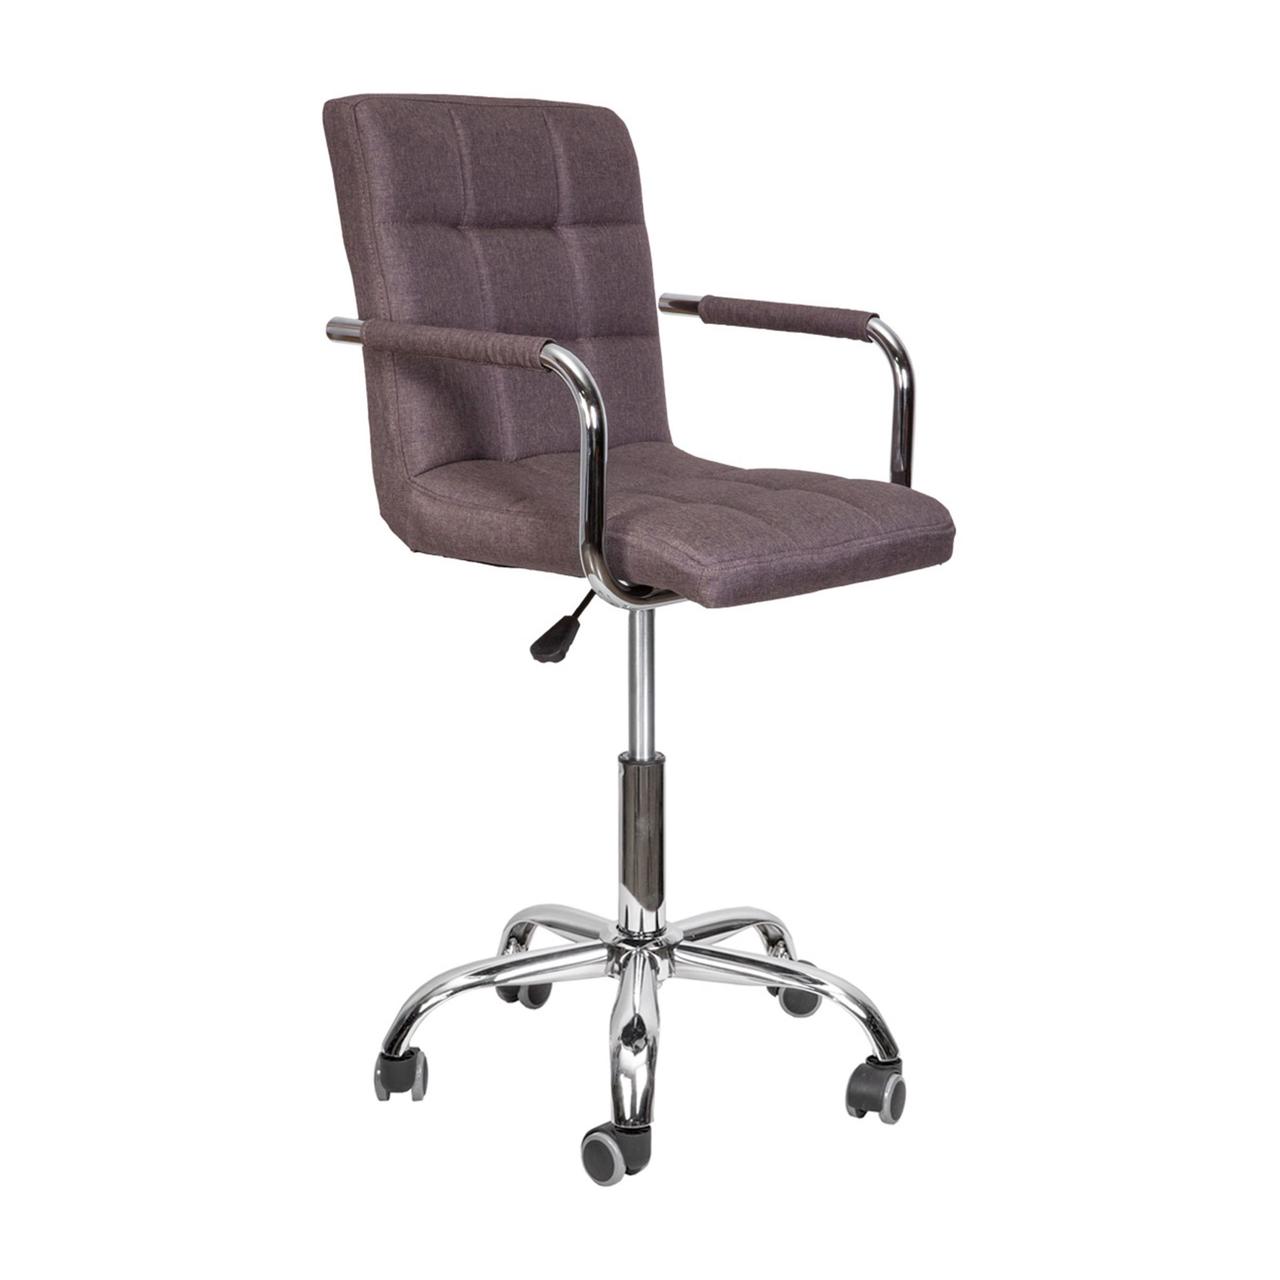 Кресло поворотное Rosio 2, серый, ткань, колеса